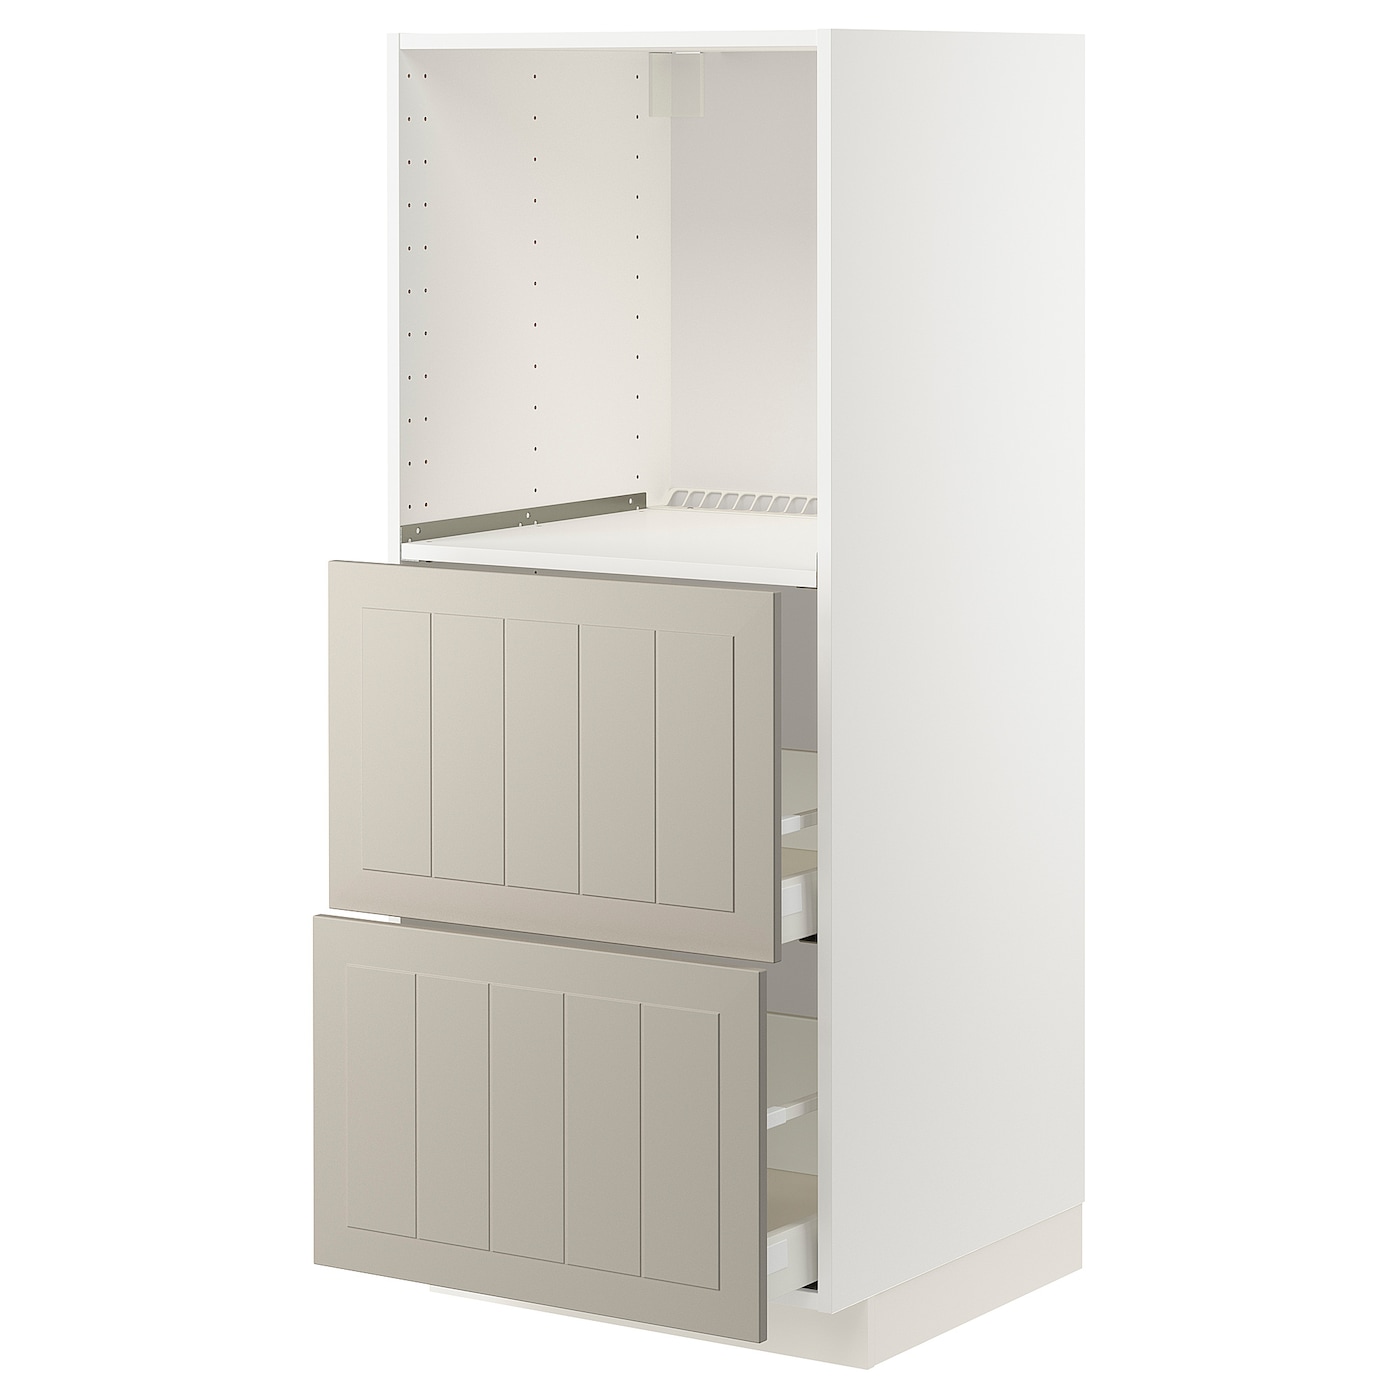 Напольный шкаф  - IKEA METOD MAXIMERA, 148x61,9x60см, белый/светло-серый, МЕТОД МАКСИМЕРА ИКЕА